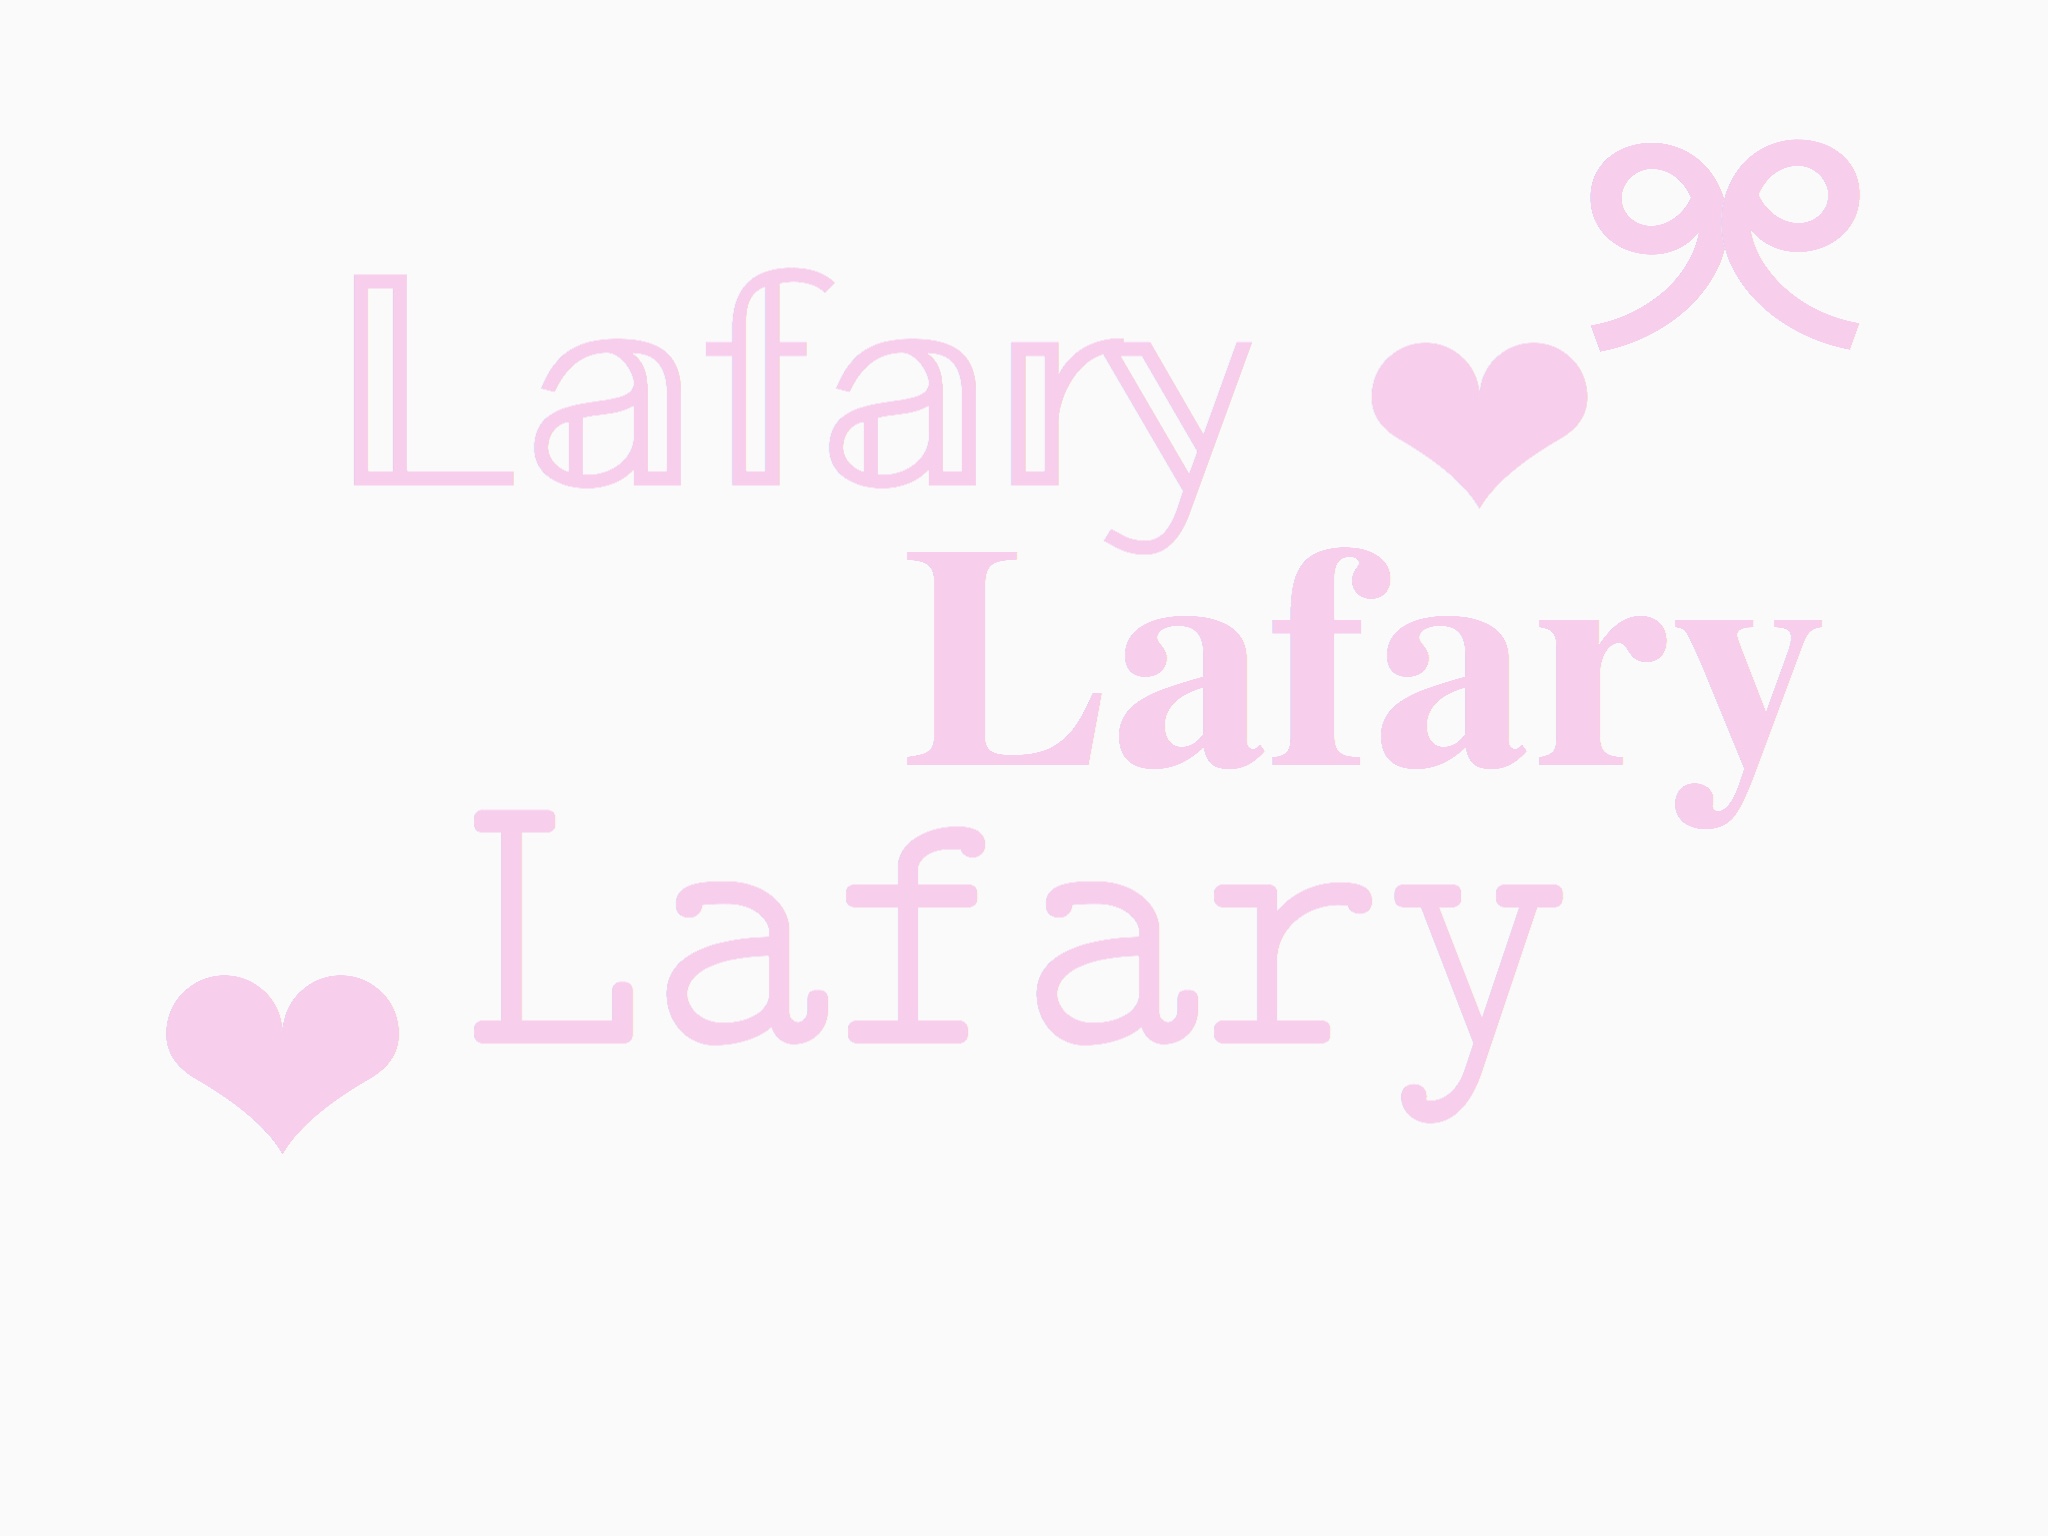 コピペで使える 特殊文字アルファベットをinstagramに使用する方法 Lafary